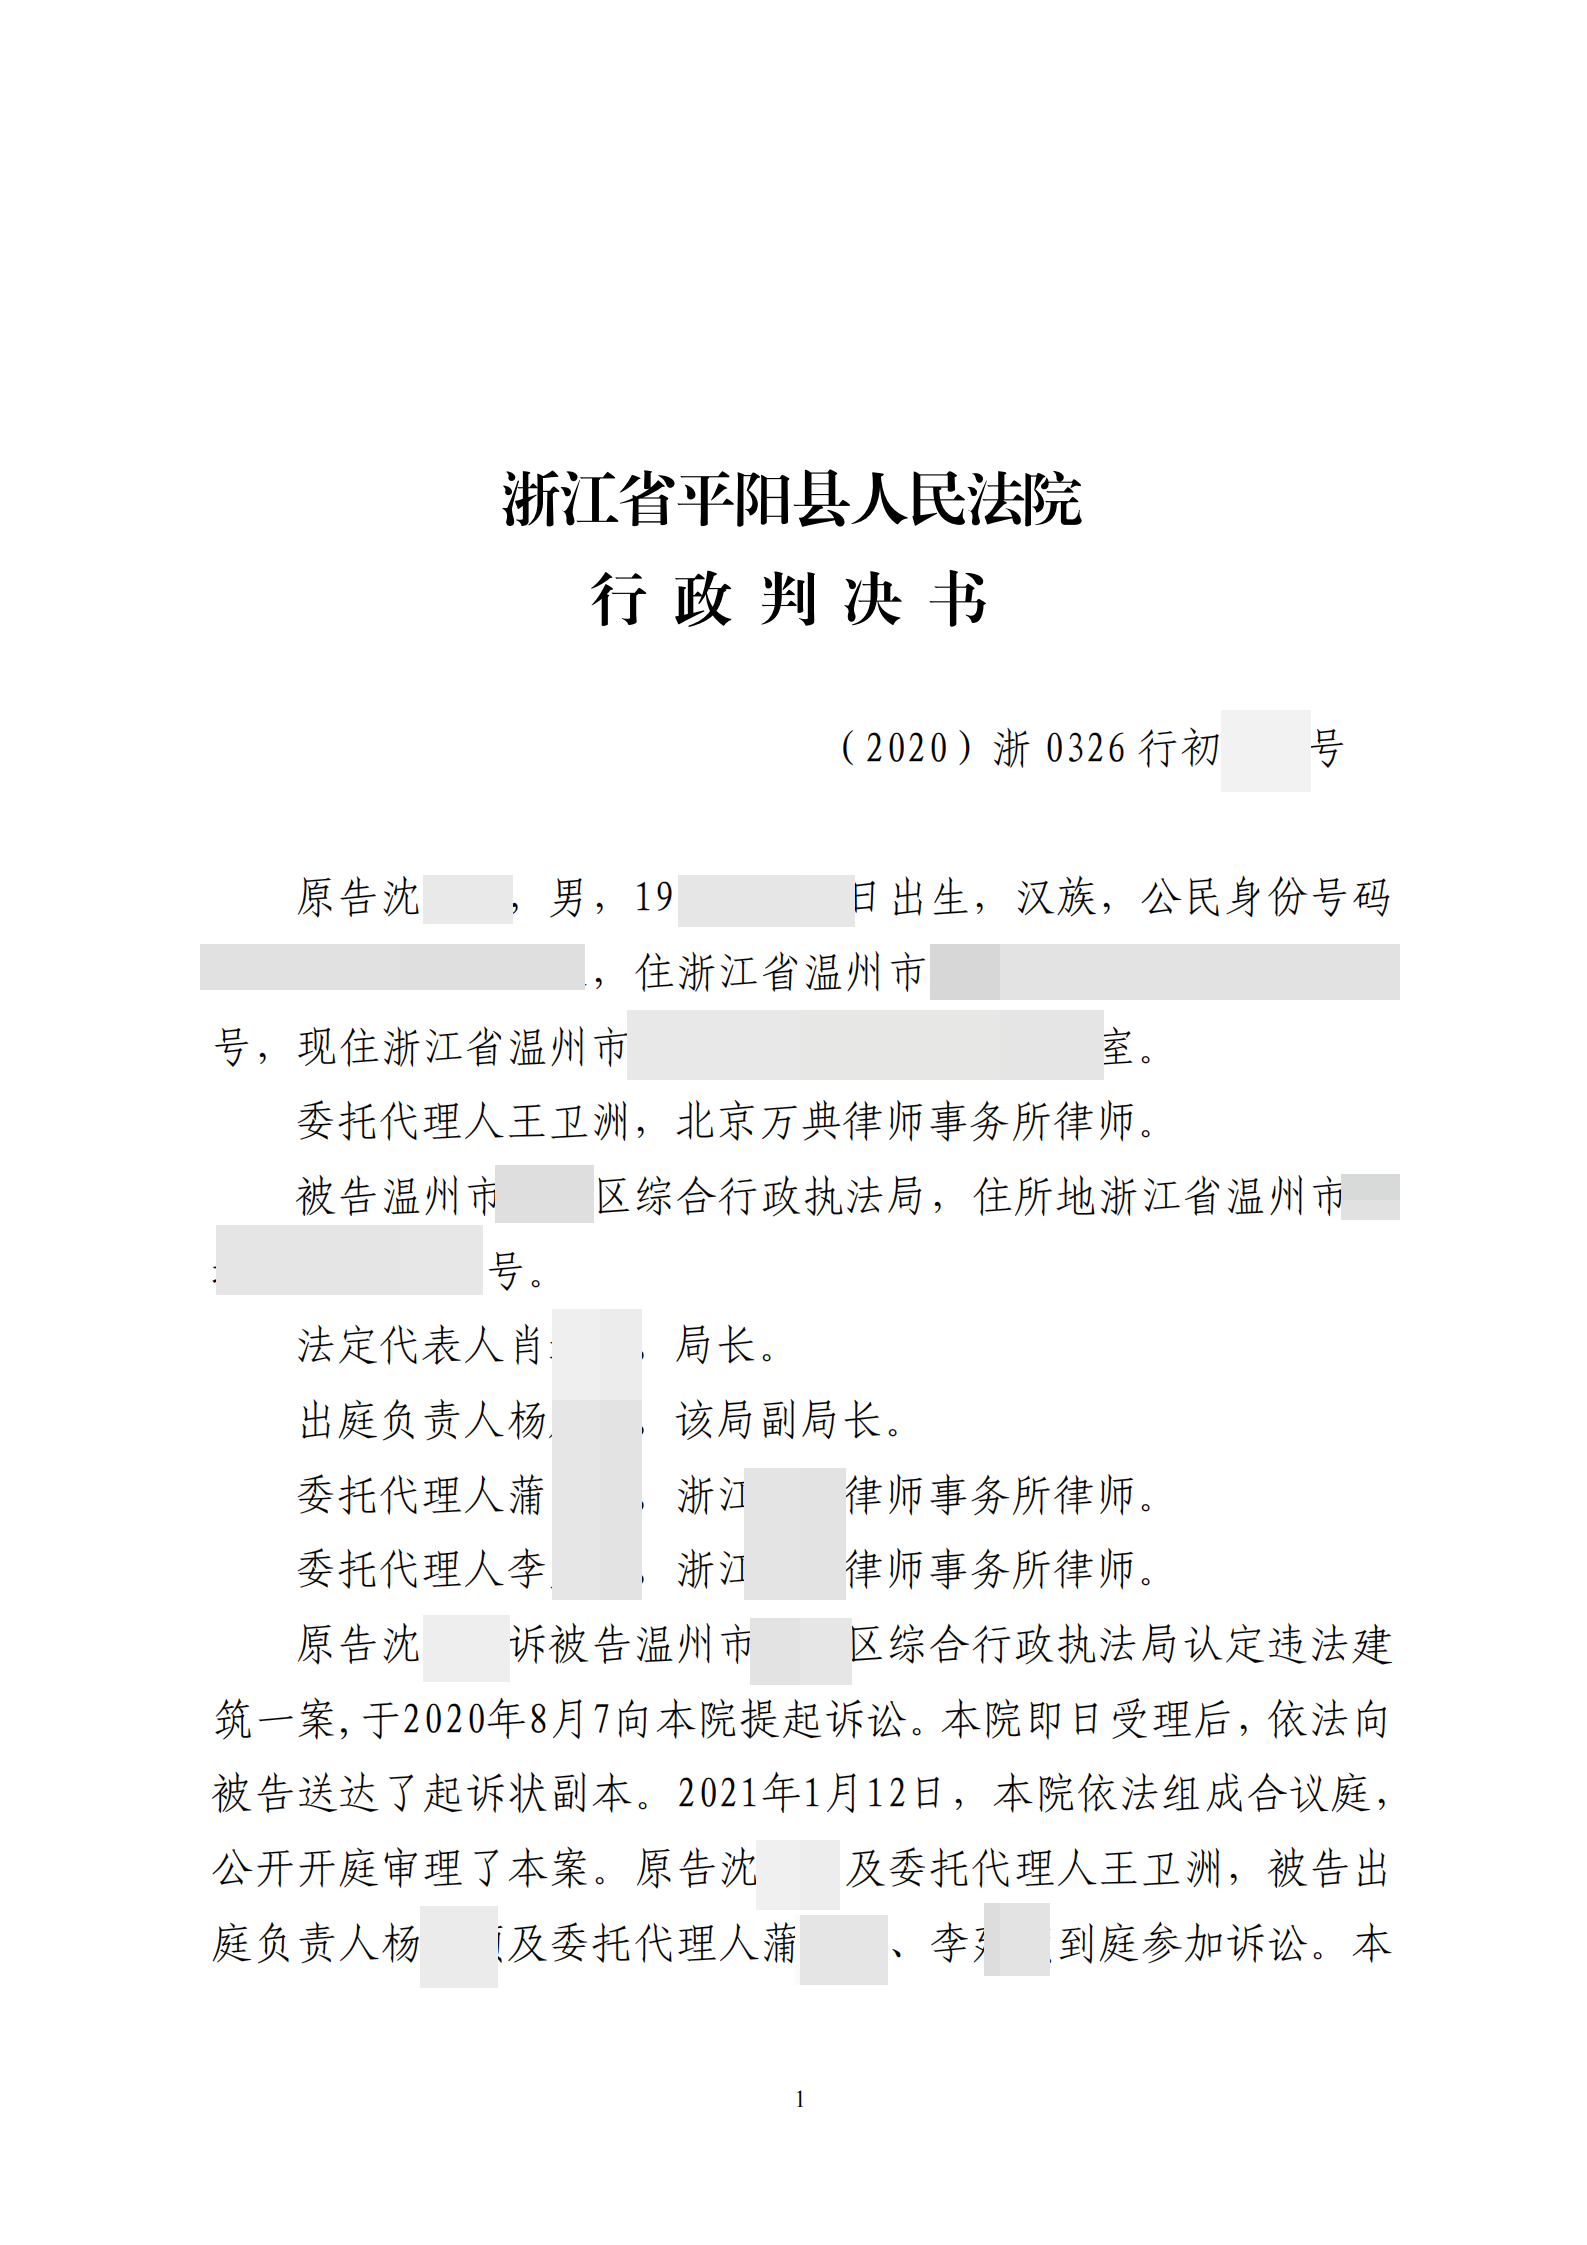  浙江温州:被连续两次撤销的违法建筑决定，还要再来吗？